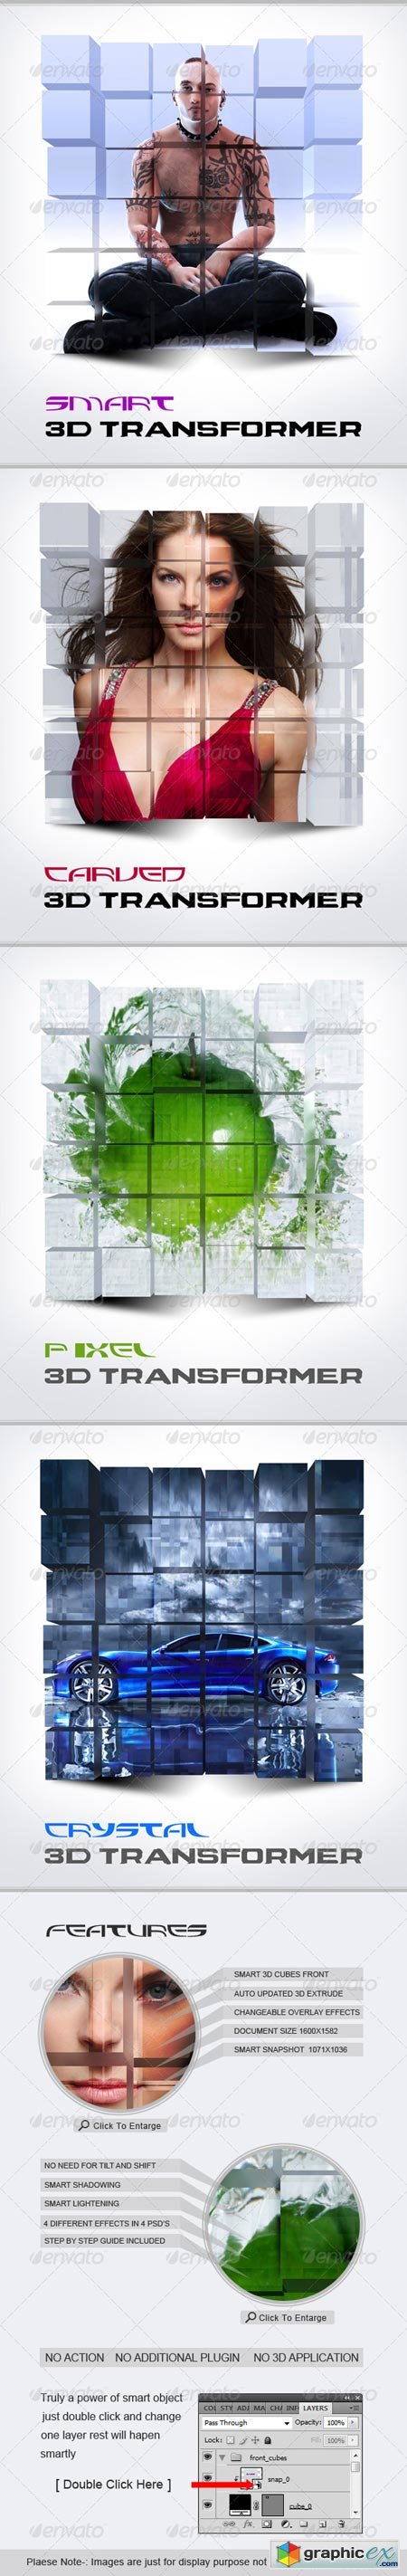 Smart 3D Transformer 241213